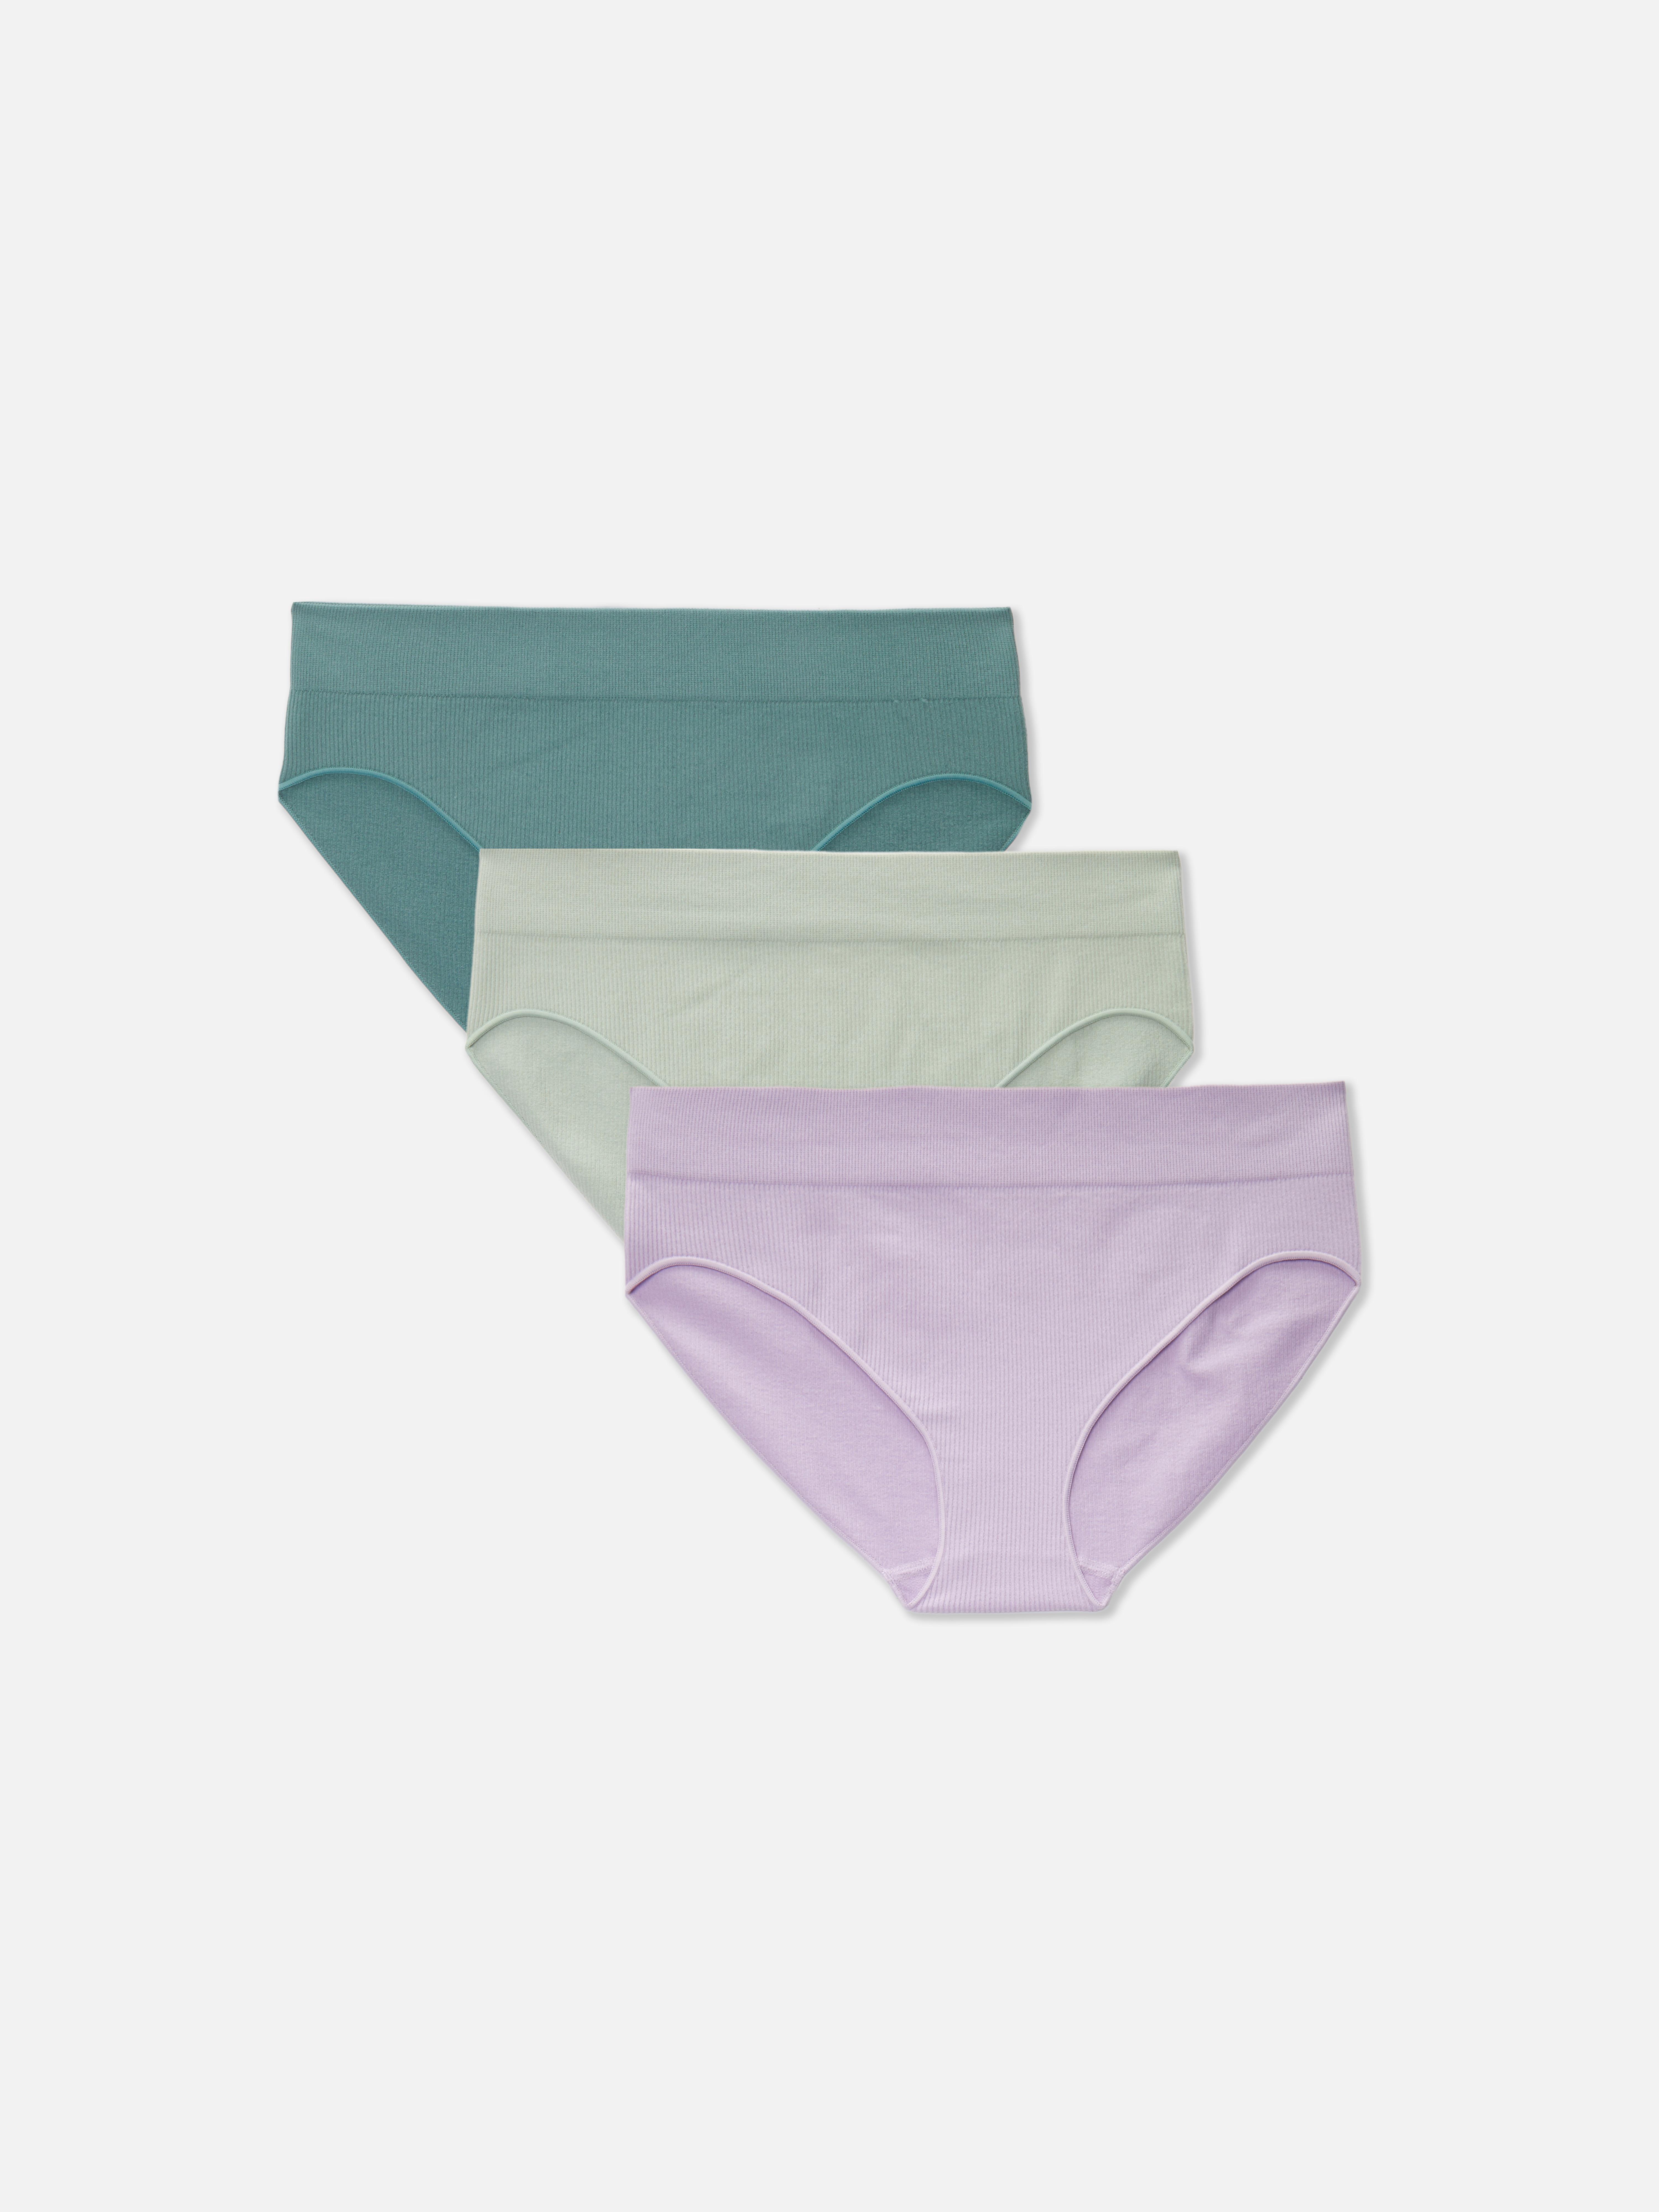 Primark Online Shop Women's Full Cup Thin Underwear Plus Size